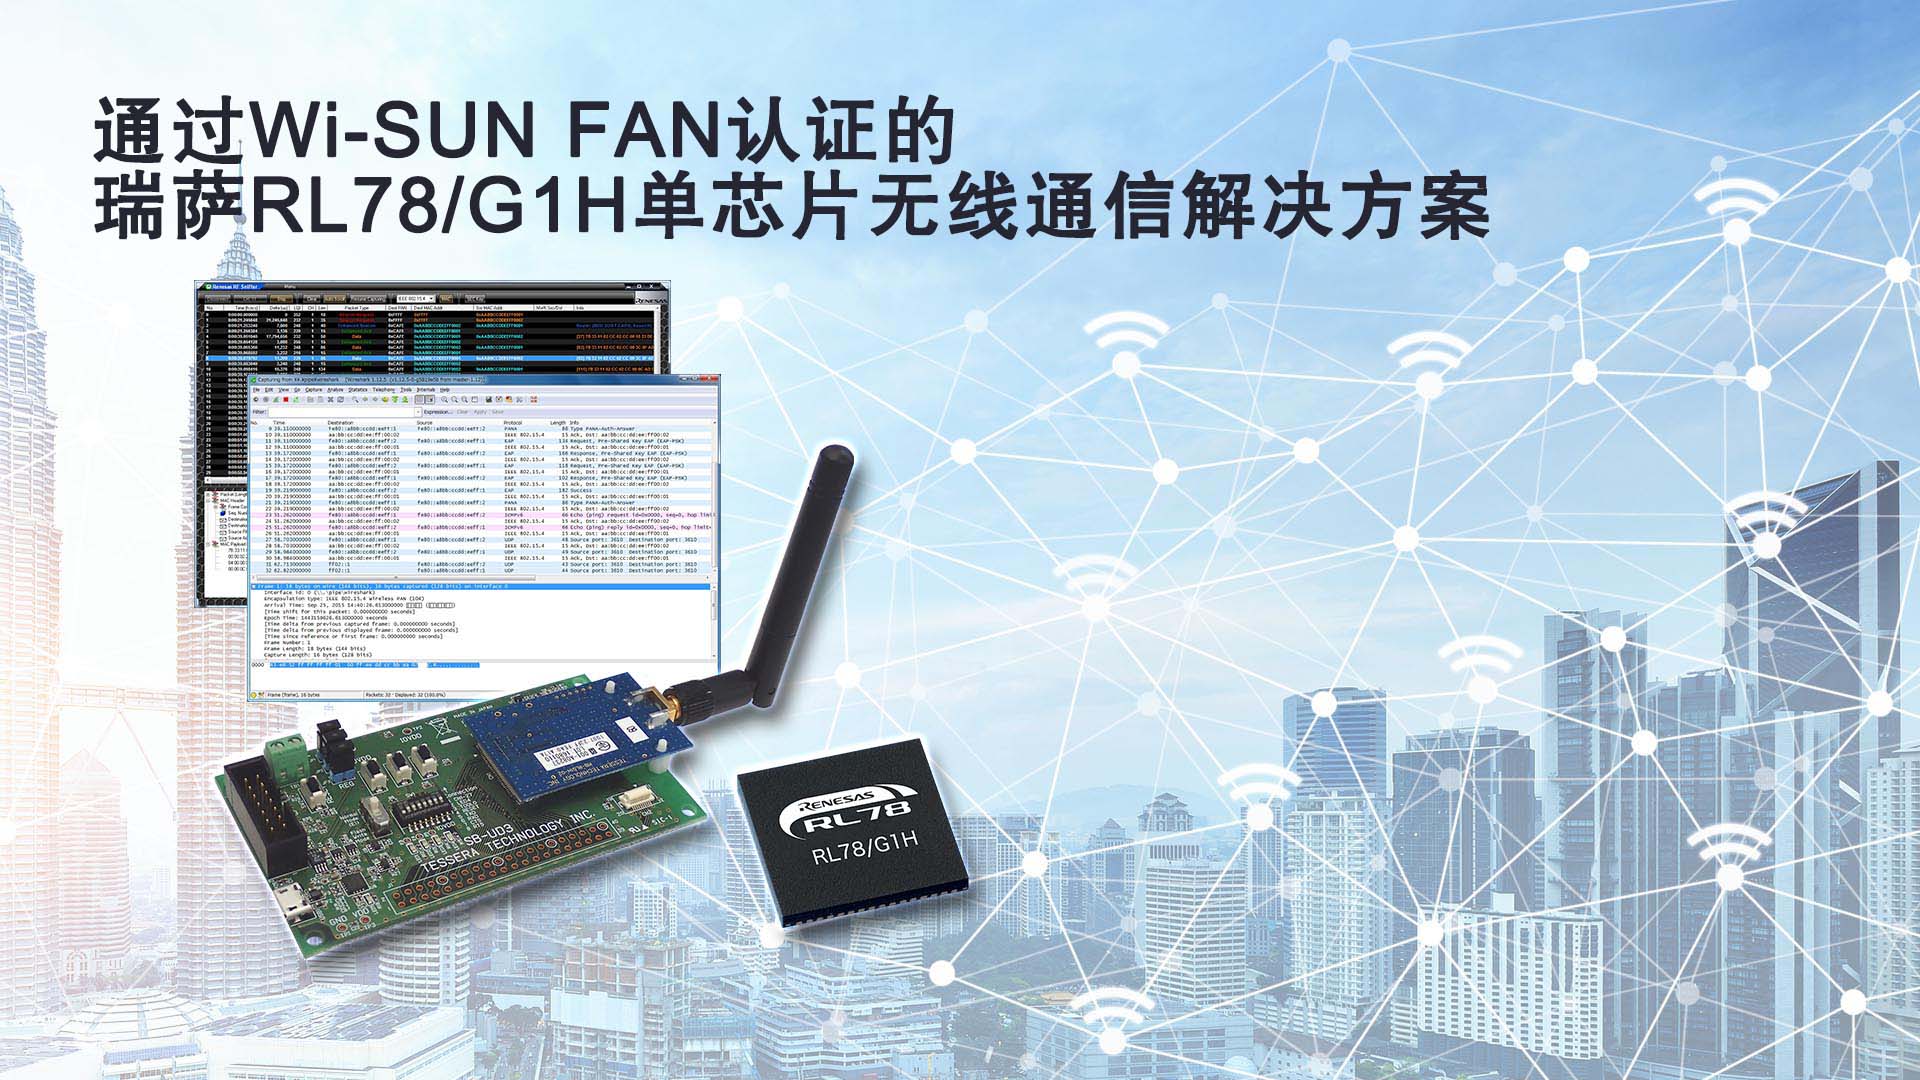 瑞薩電子大力推廣支持無線Wi-SUN FAN協議的 RL78/G1H單芯片解決方案